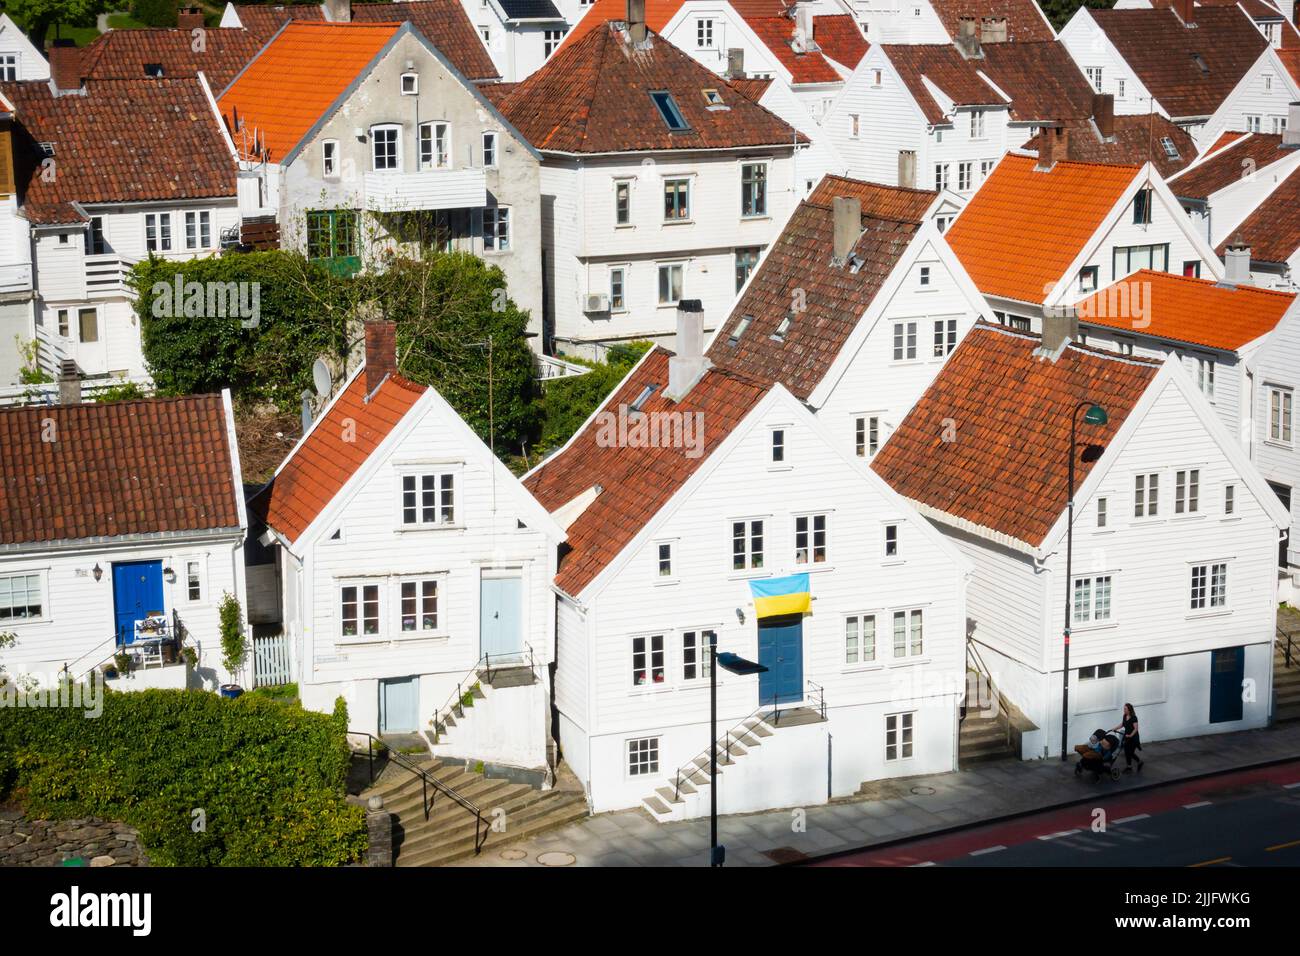 Maisons traditionnelles en bois peintes en blanc norvégien à Stavanger, Norvège. Un drapeau ukranien est envoyé pour soutenir l'Ukraine Banque D'Images